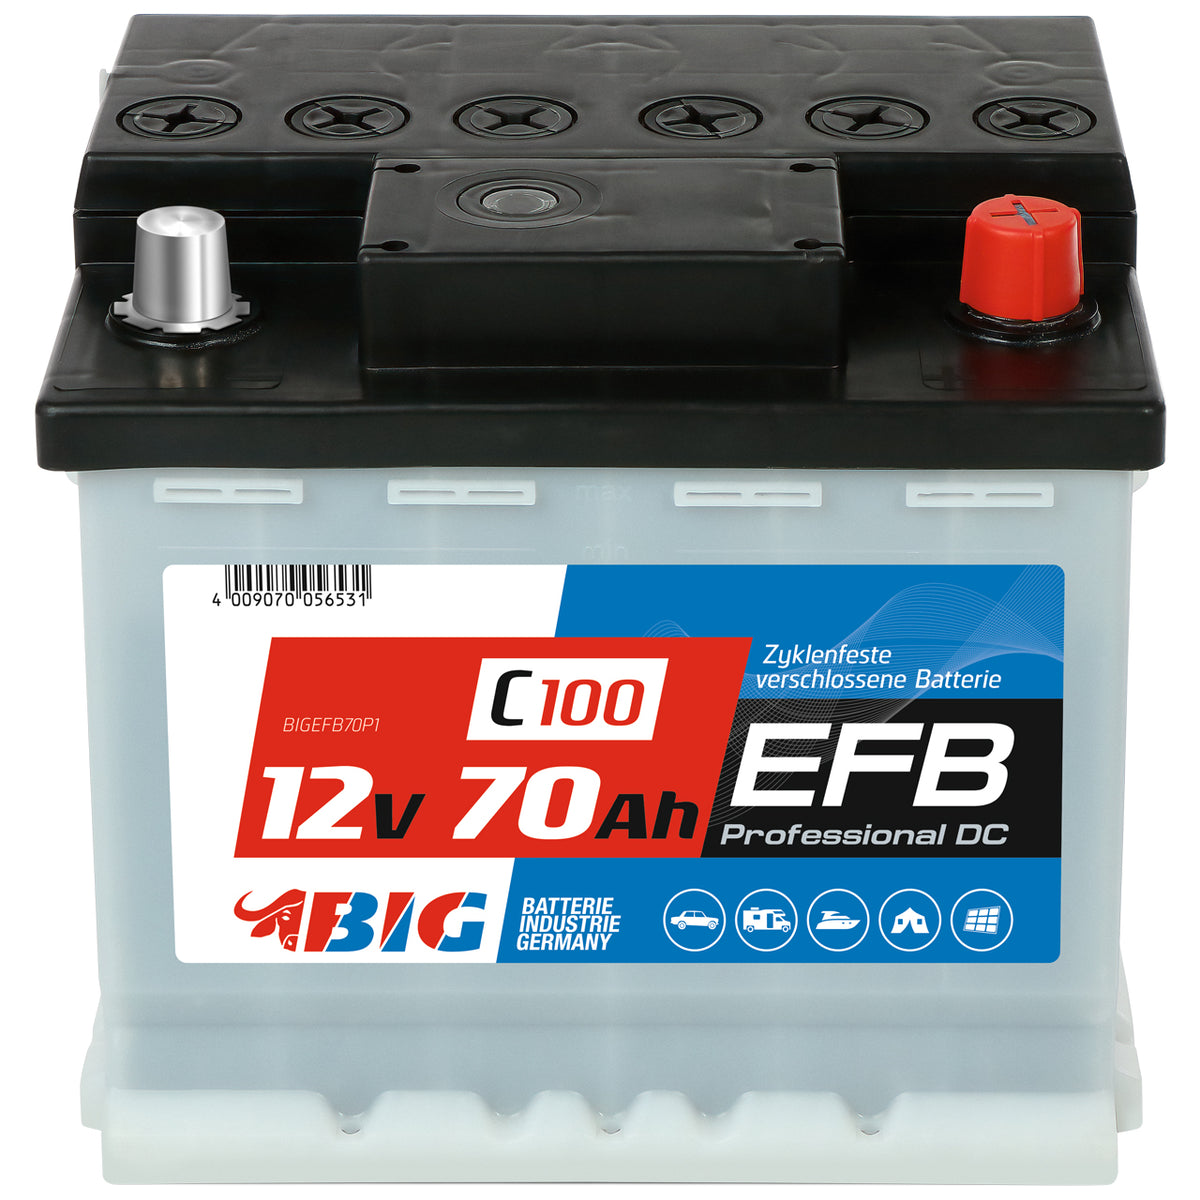 EFB Batterie kaufen >> Neu, gefüllt und geladen!